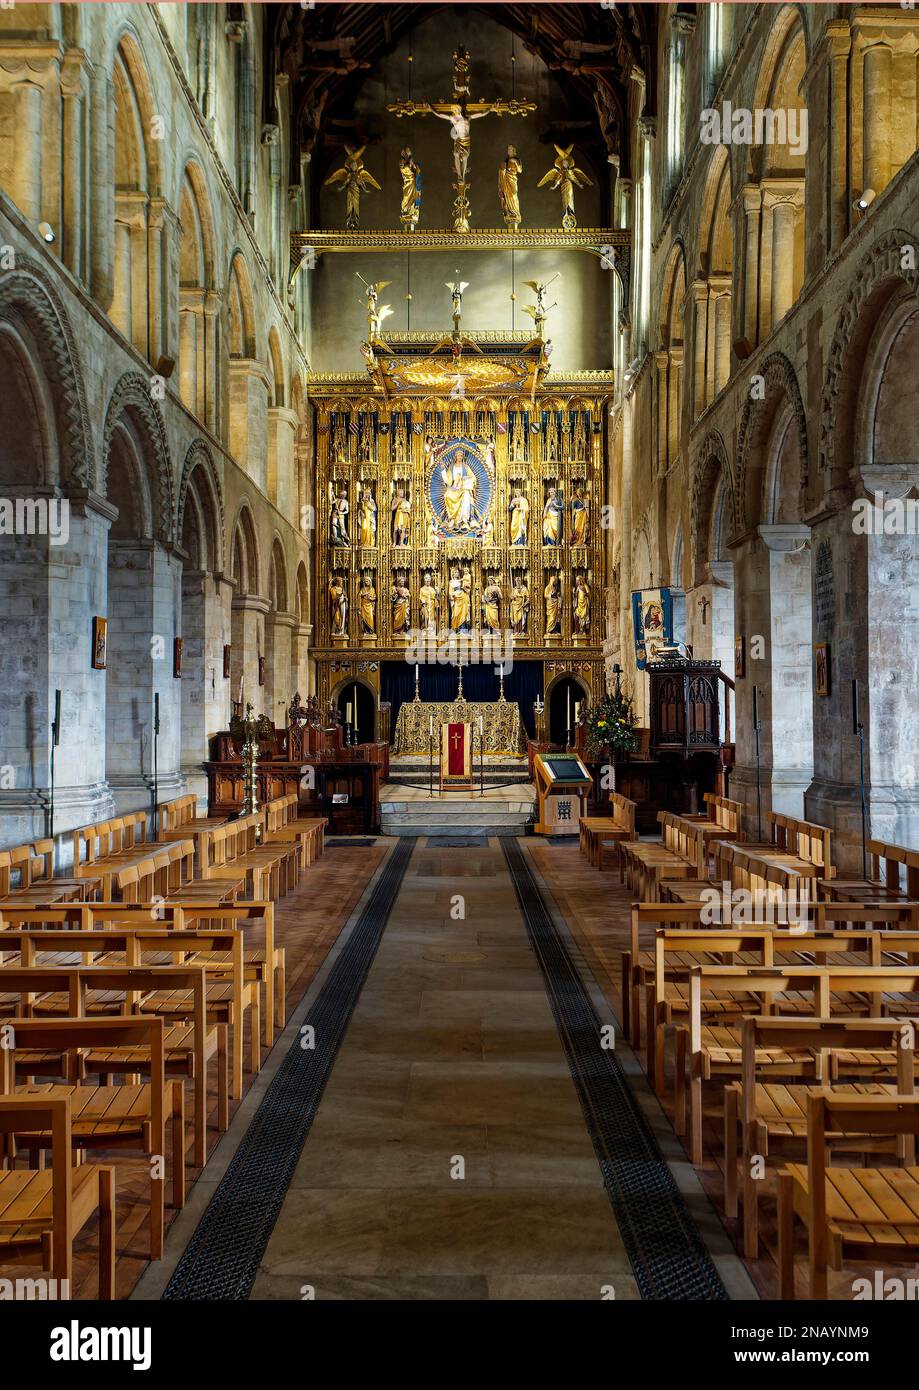 La nef et le choeur de l'abbaye de Wymondham à Norfolk montrant l'architecture normande et le mémorial de guerre de WW1, des reliedos dorés ou un écran d'autel. Banque D'Images